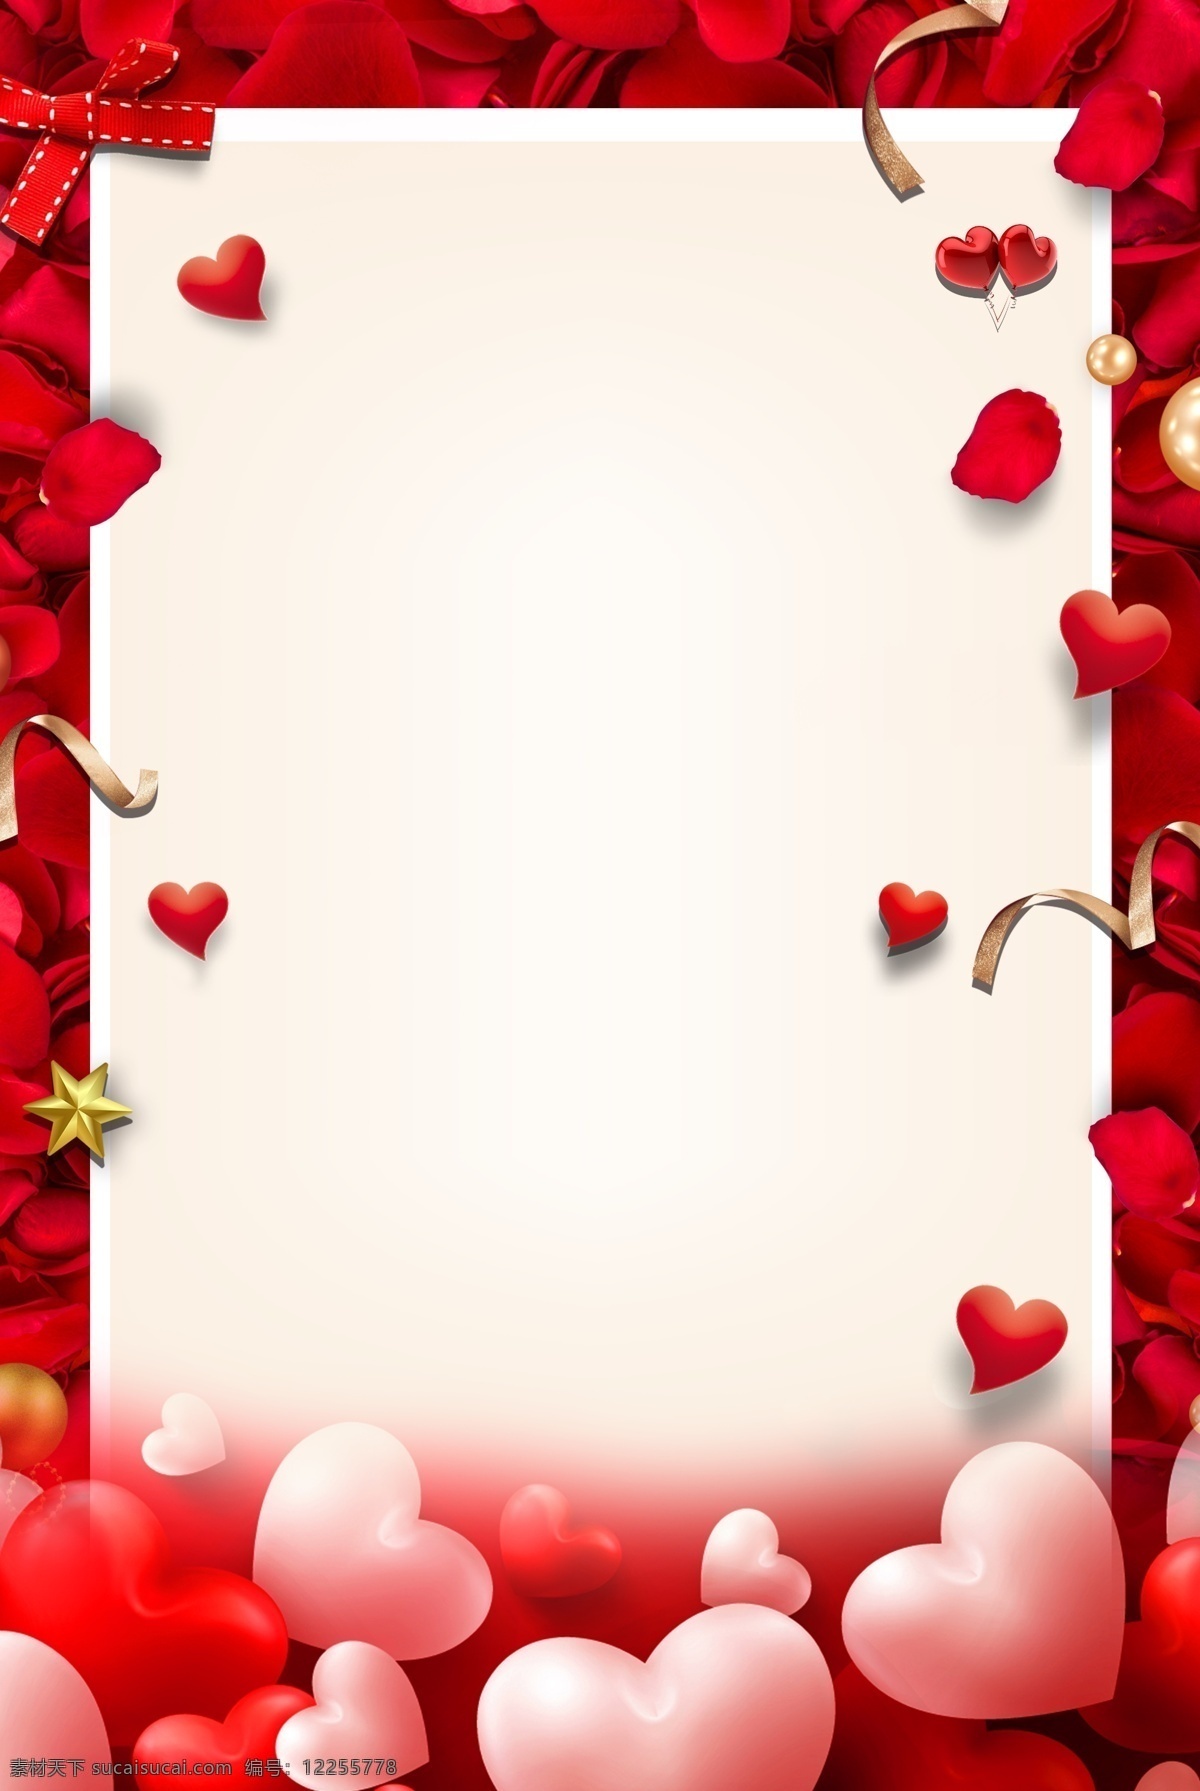 红色 玫瑰 爱心 520 情人节 海报 背景 浪漫 文艺 清新 卡通 手绘 质感 纹理